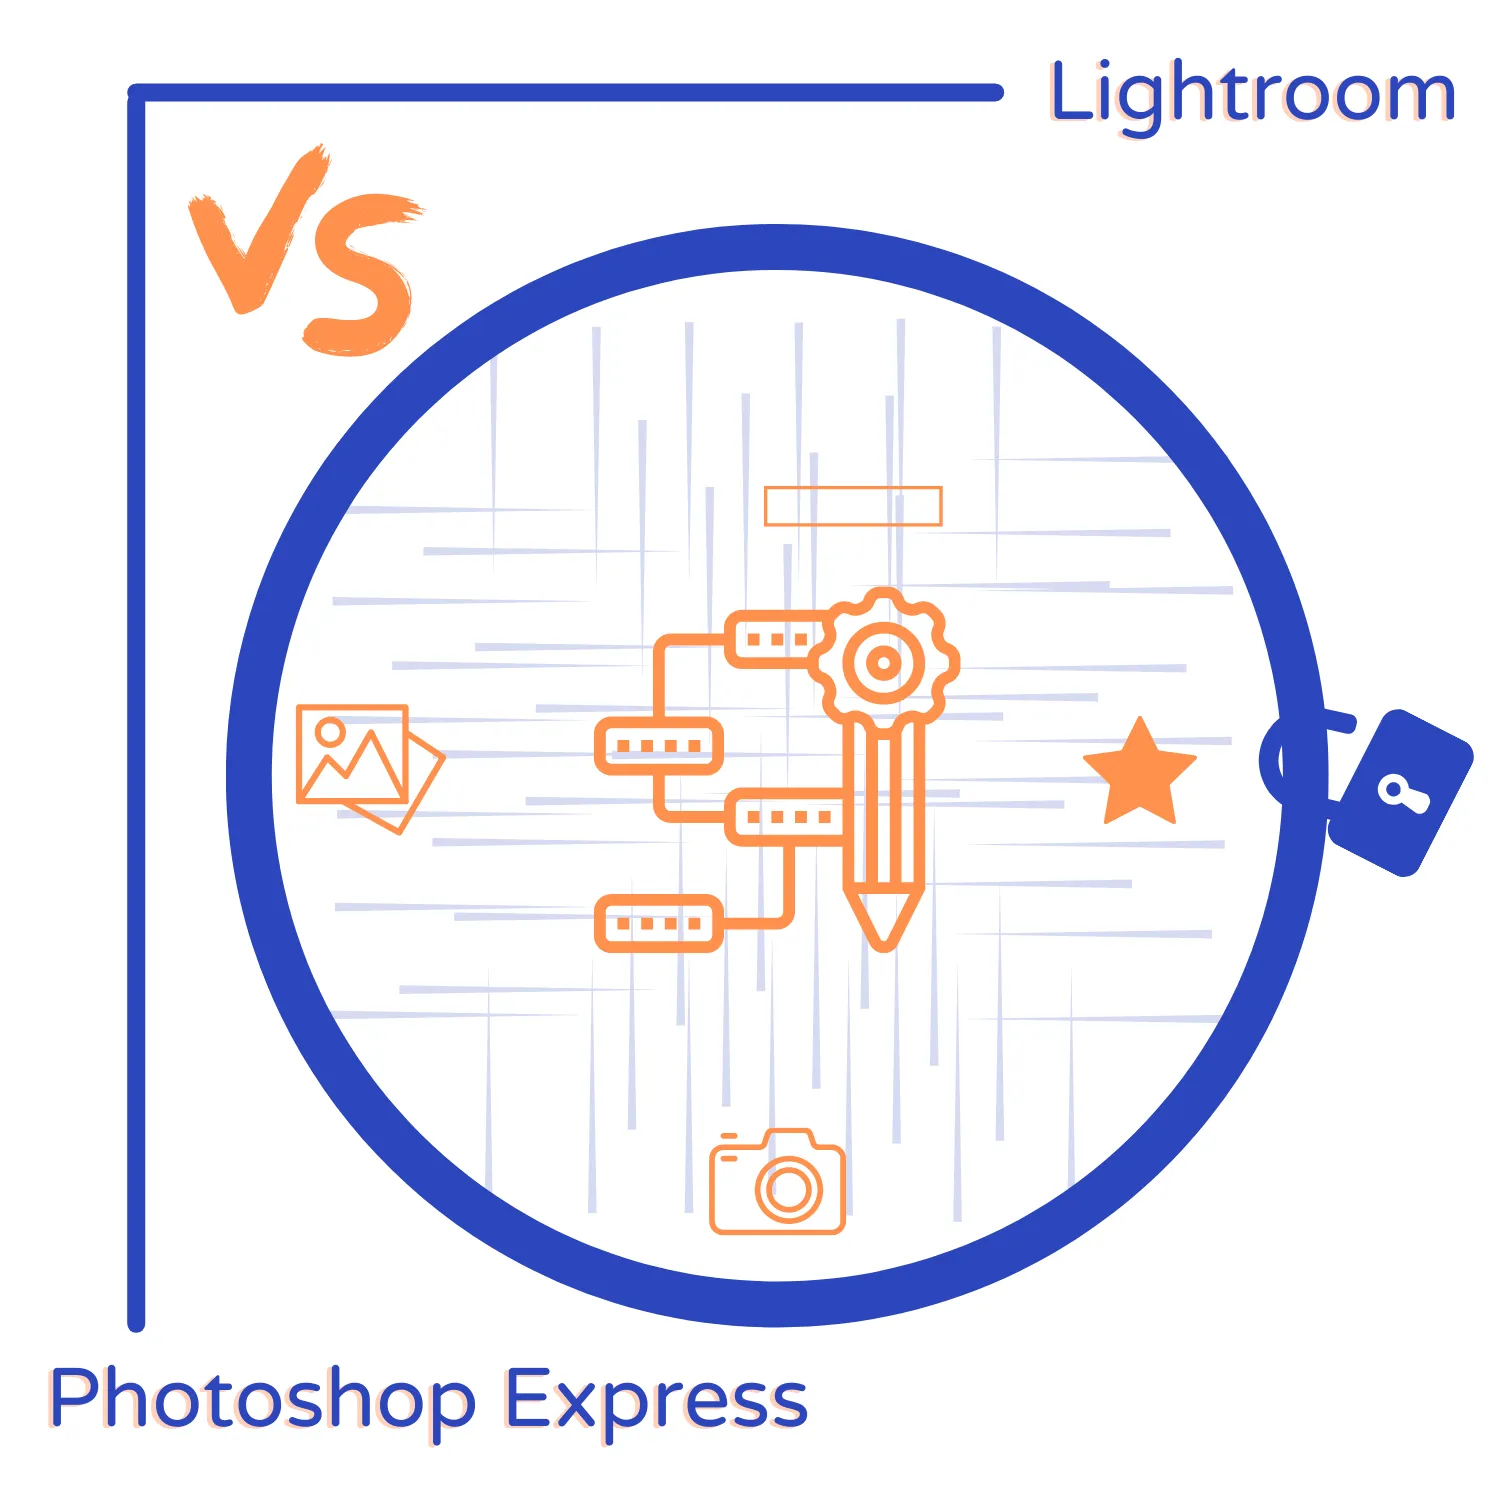 Photoshop Express vs. Lightroom